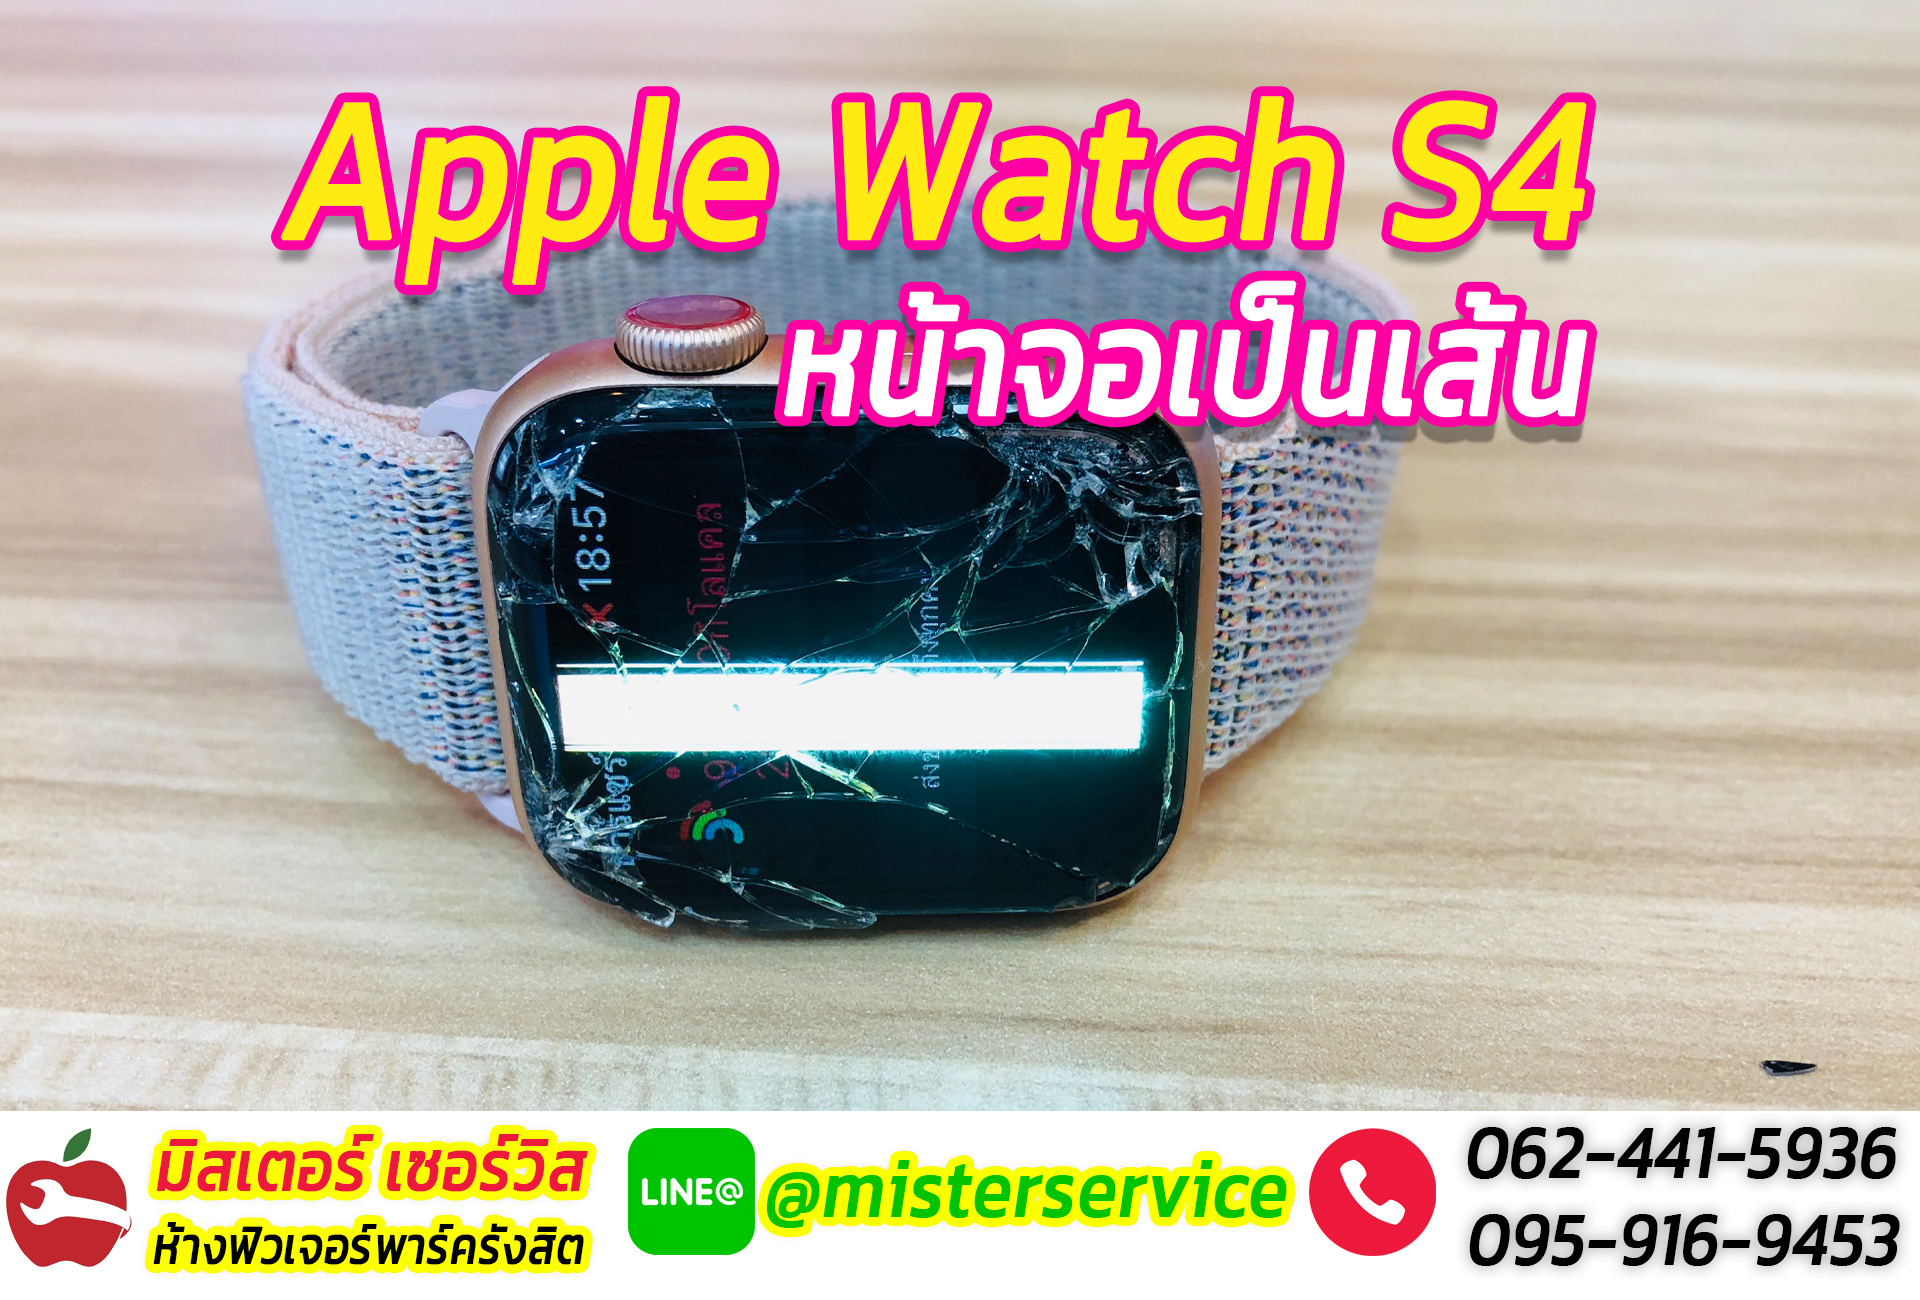 ซ่อม Apple Watch พิษณุโลก